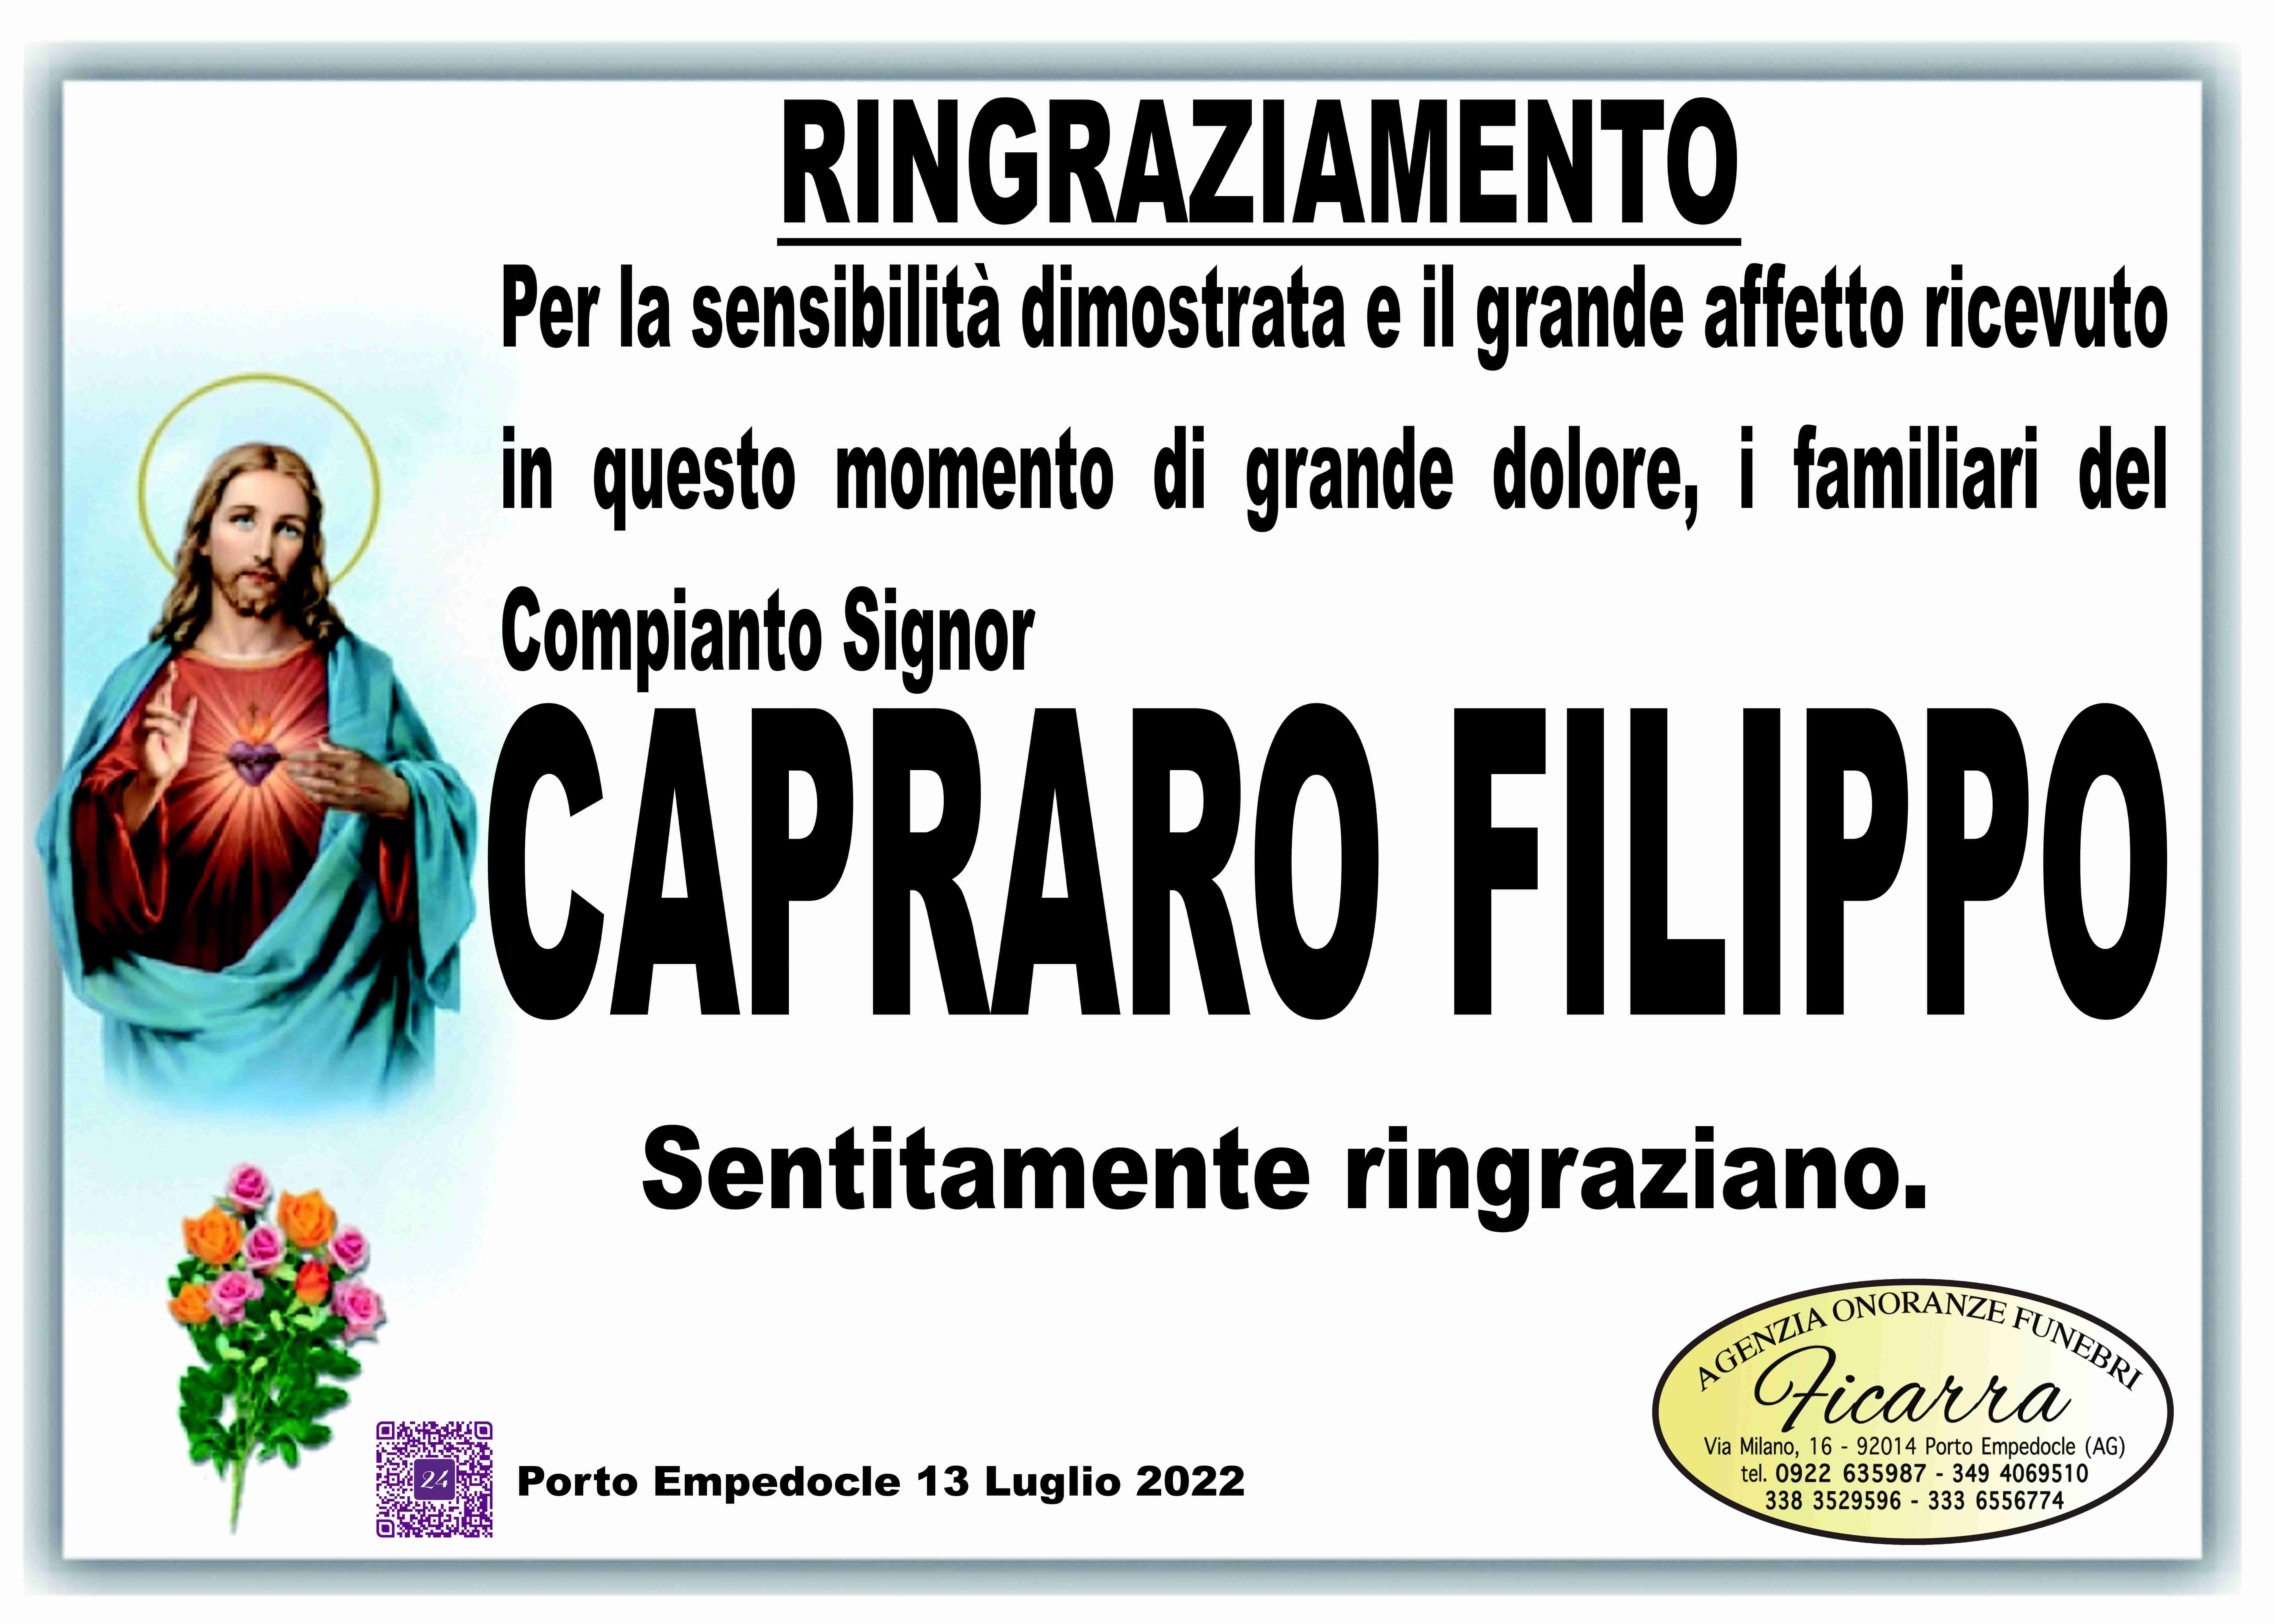 Filippo Capraro